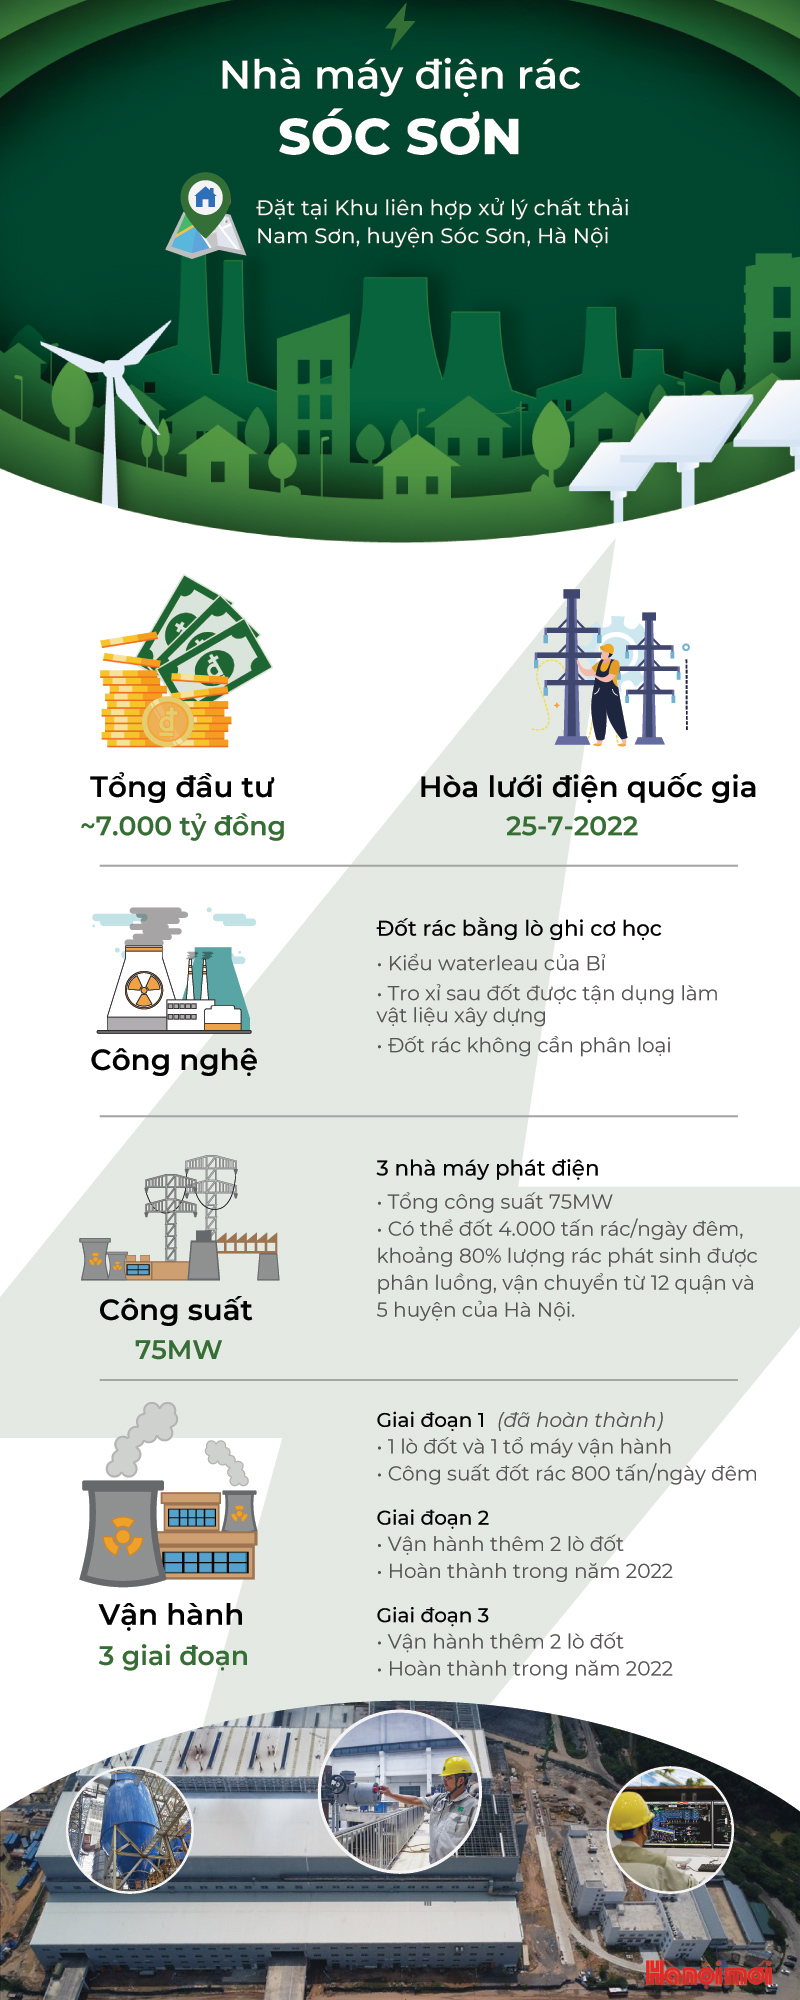 Thông tin về Nhà máy Điện rác Sóc Sơn (Hà Nội)